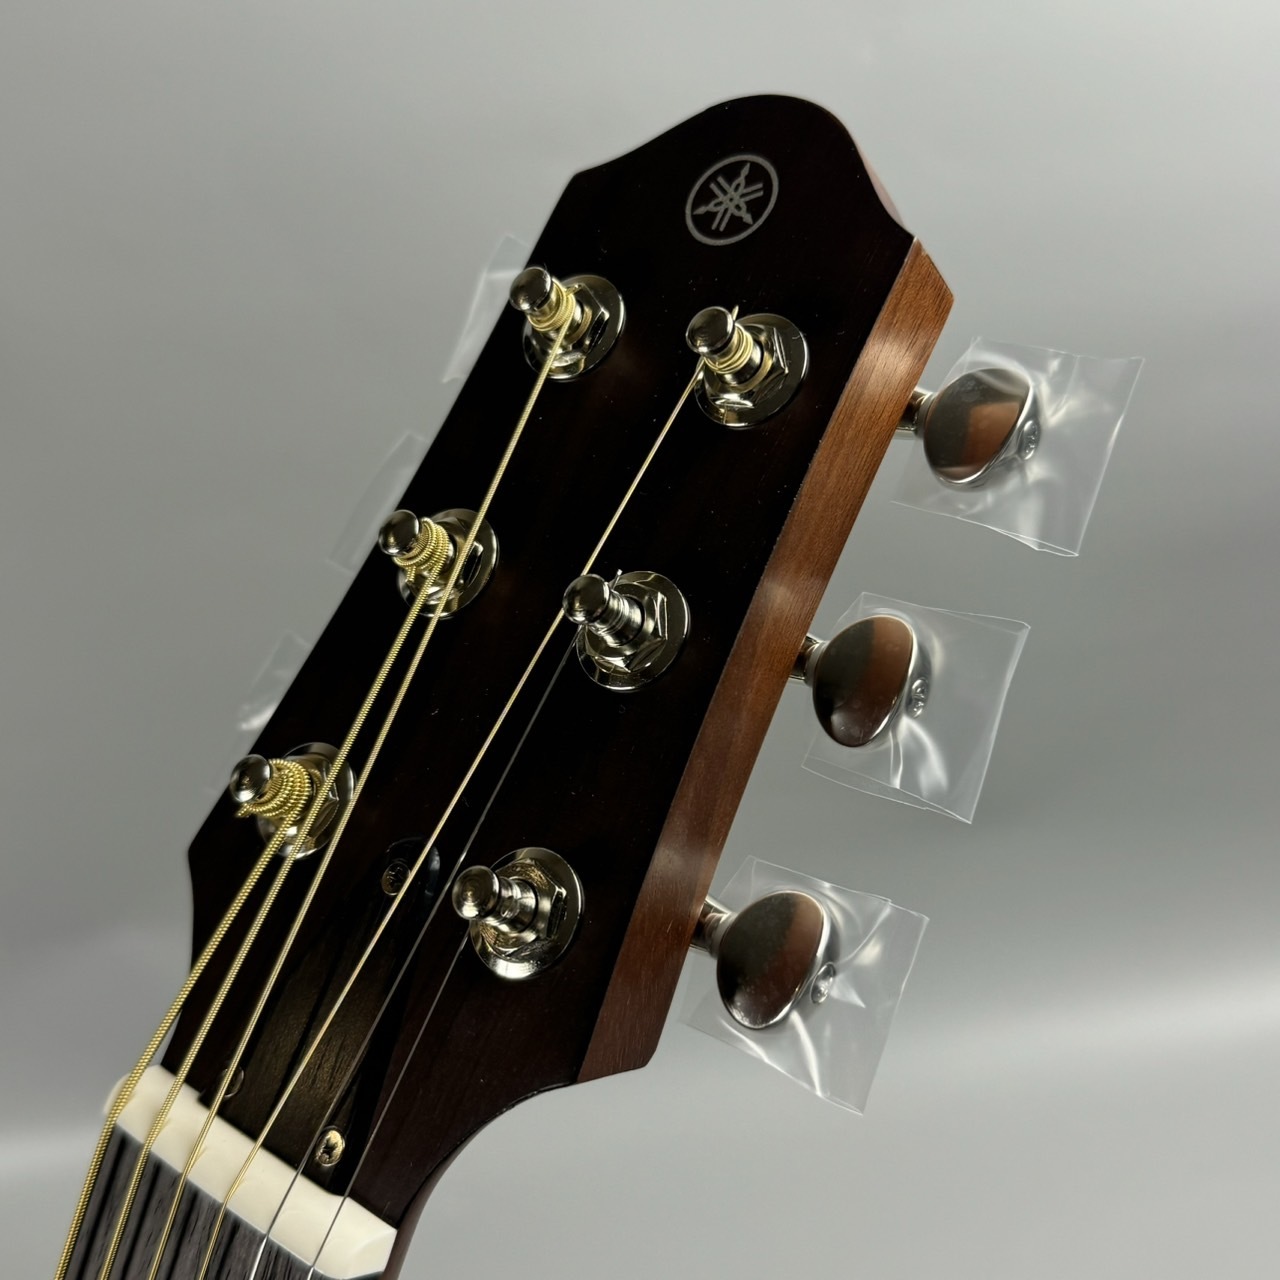 YAMAHA SLG200S NT (ナチュラル) スチール弦モデル サイレントギター 